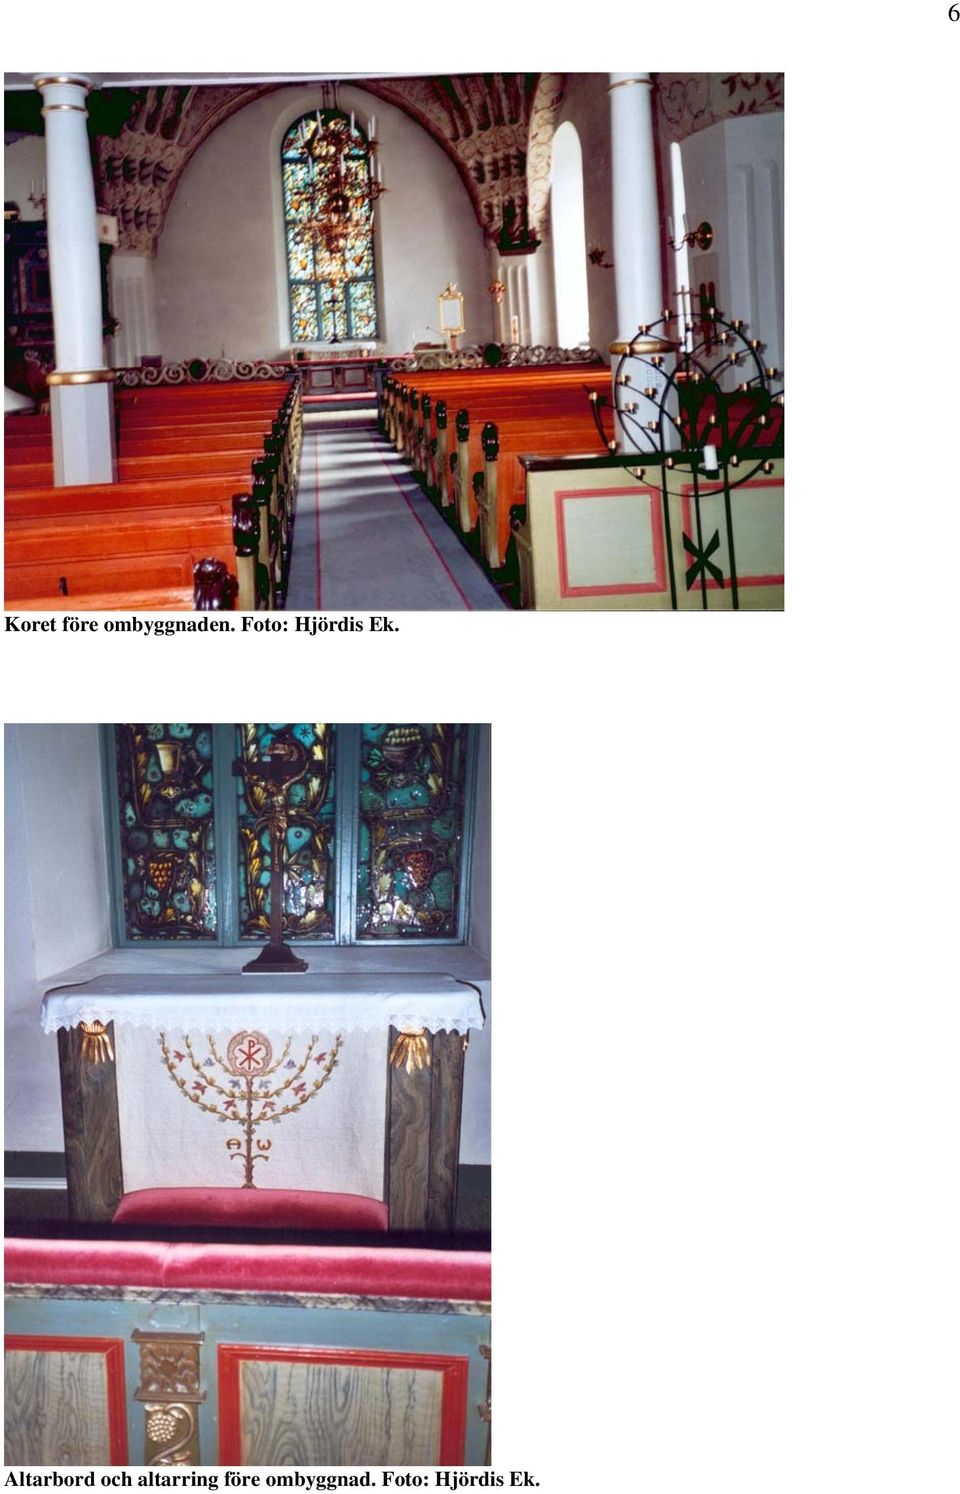 Altarbord och altarring